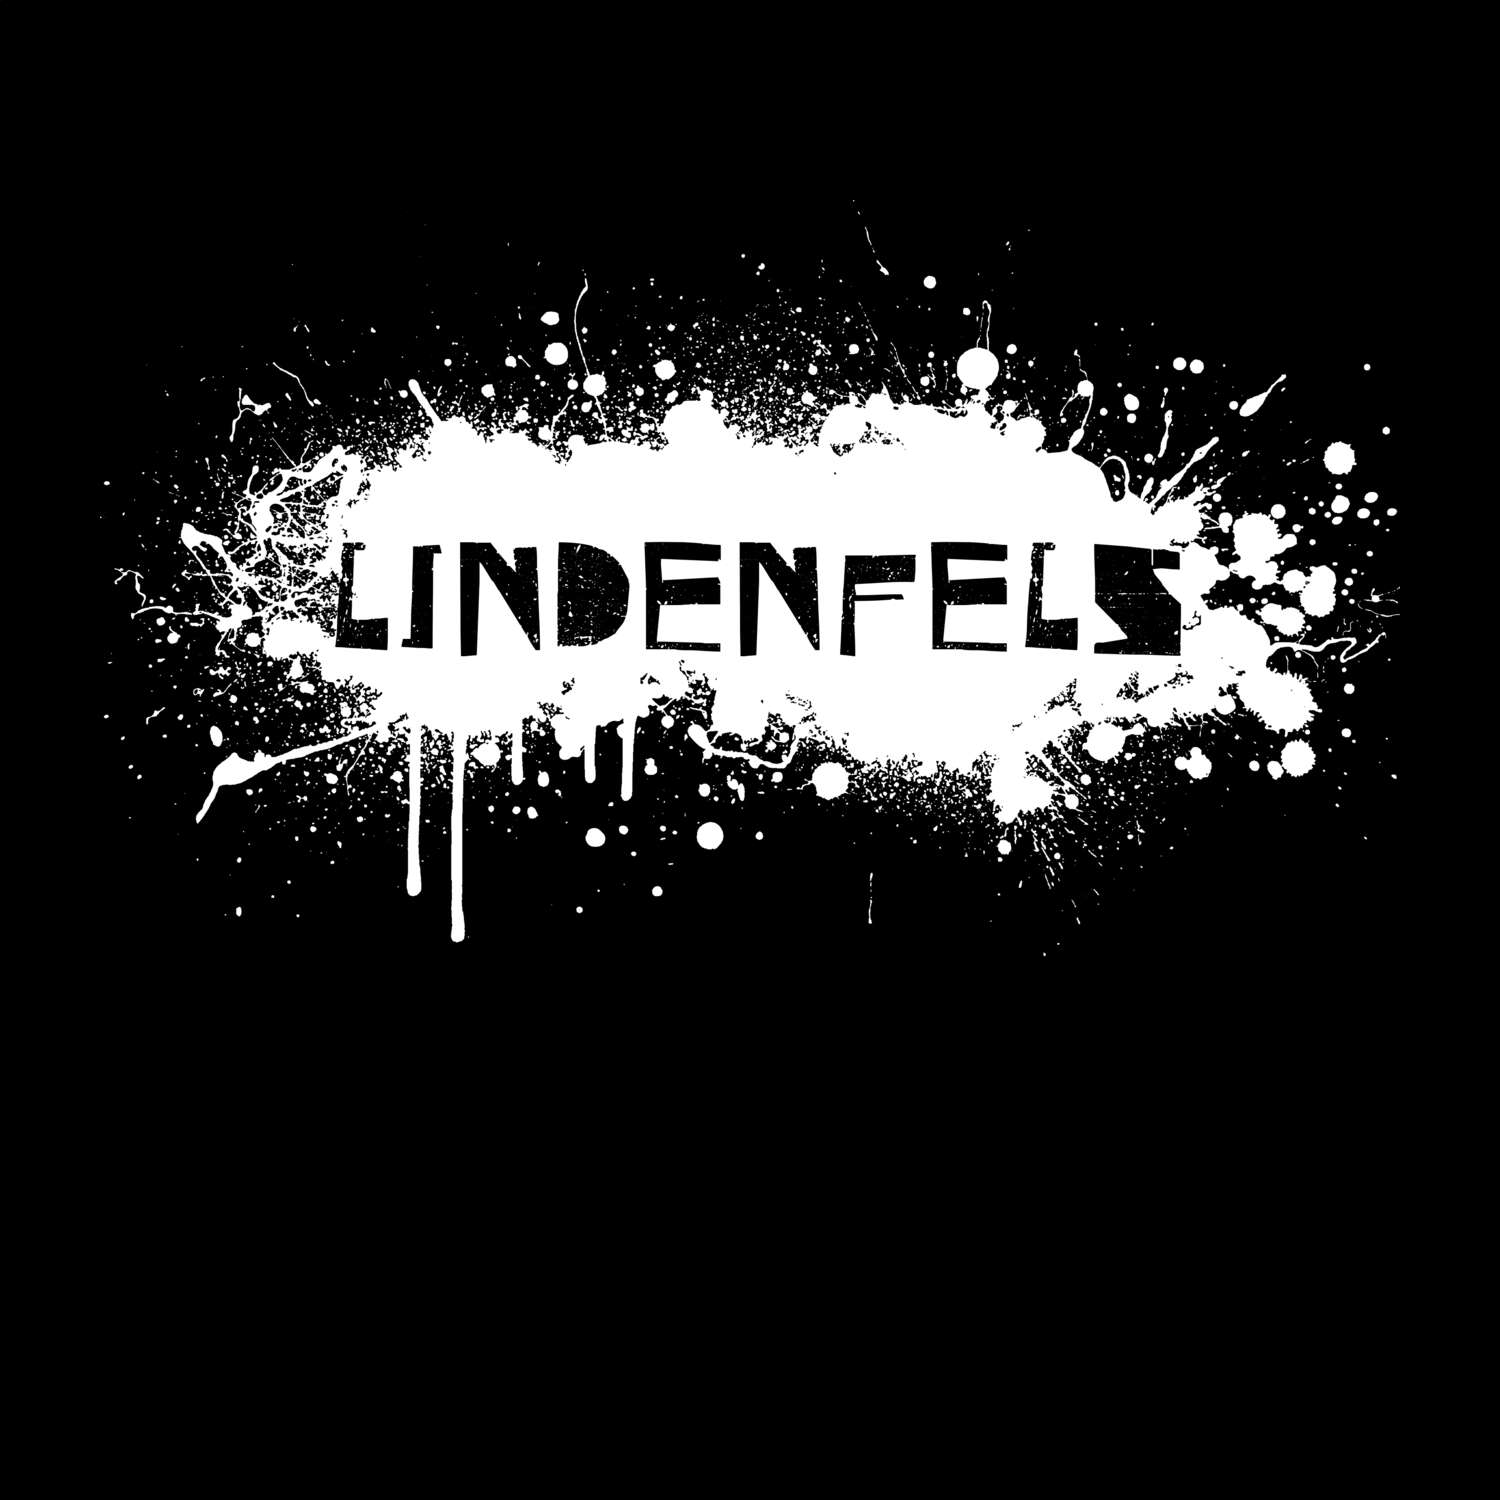 Lindenfels T-Shirt »Paint Splash Punk«